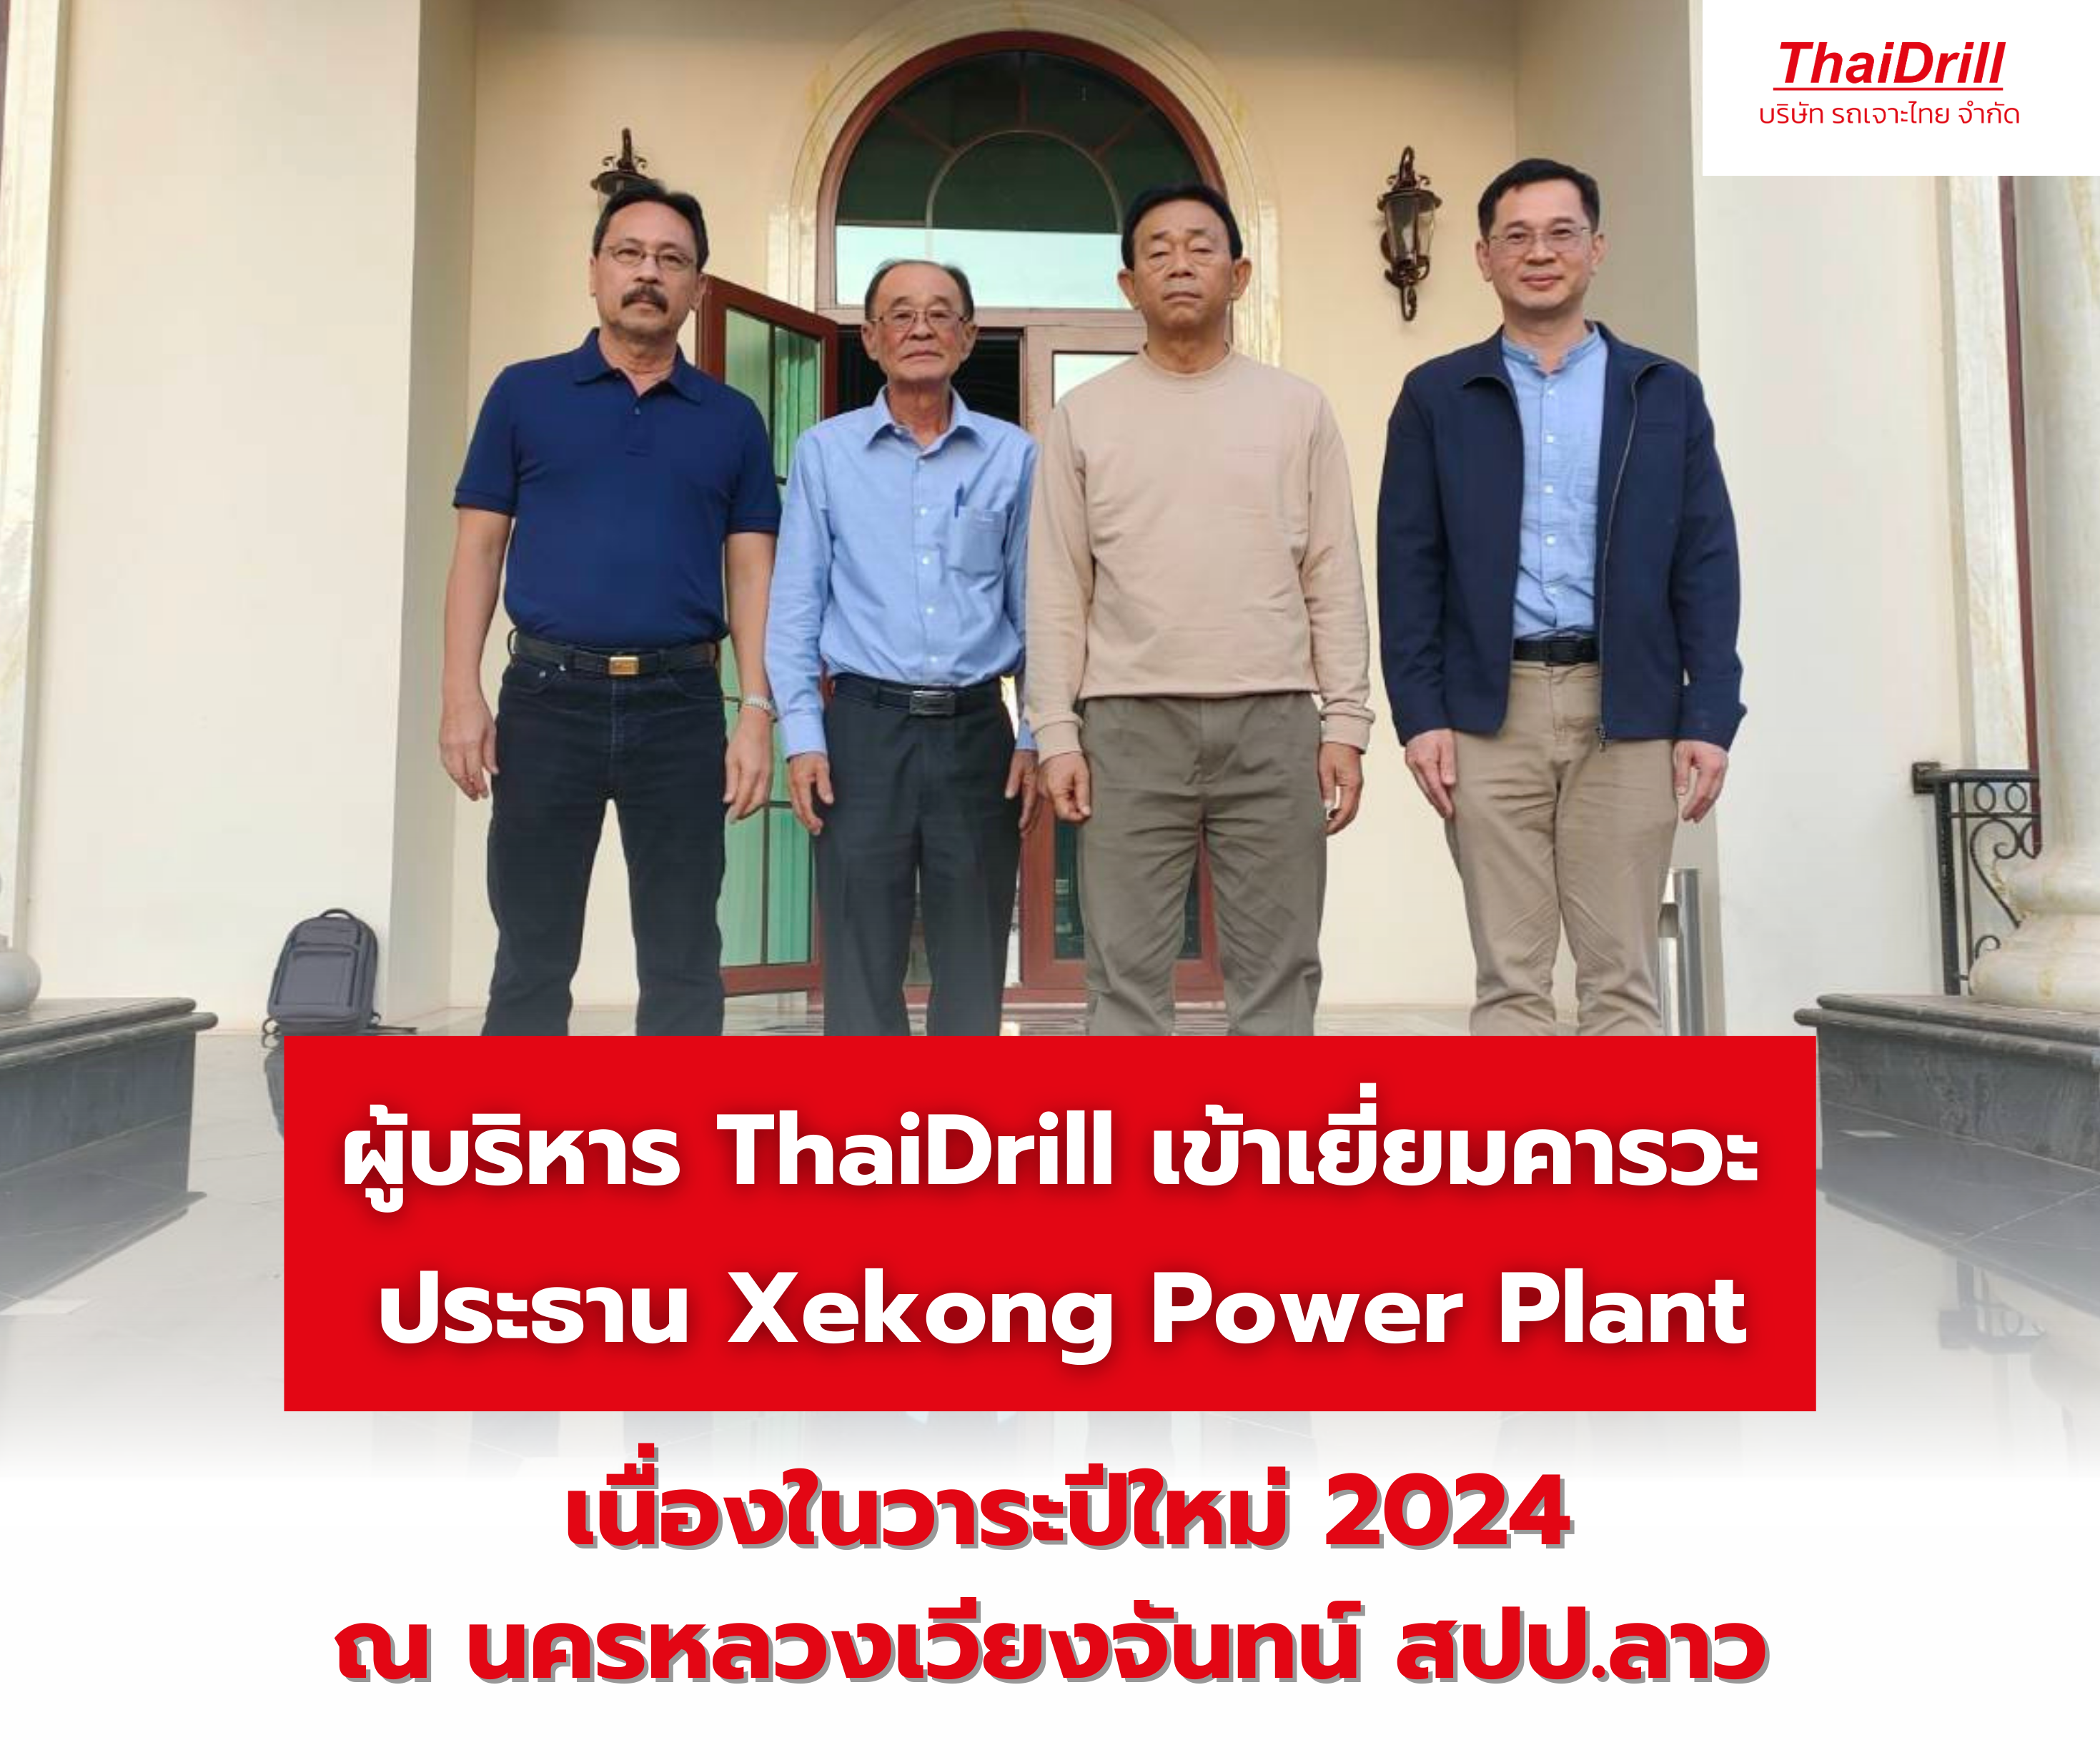 ผู้บริหาร ThaiDrill เข้าเยี่ยมคารวะ ประธาน Xekong Power Plant เนื่องในวาระปีใหม่ 2024 ณ นครหลวงเวียงจันทน์ สปป.ลาว